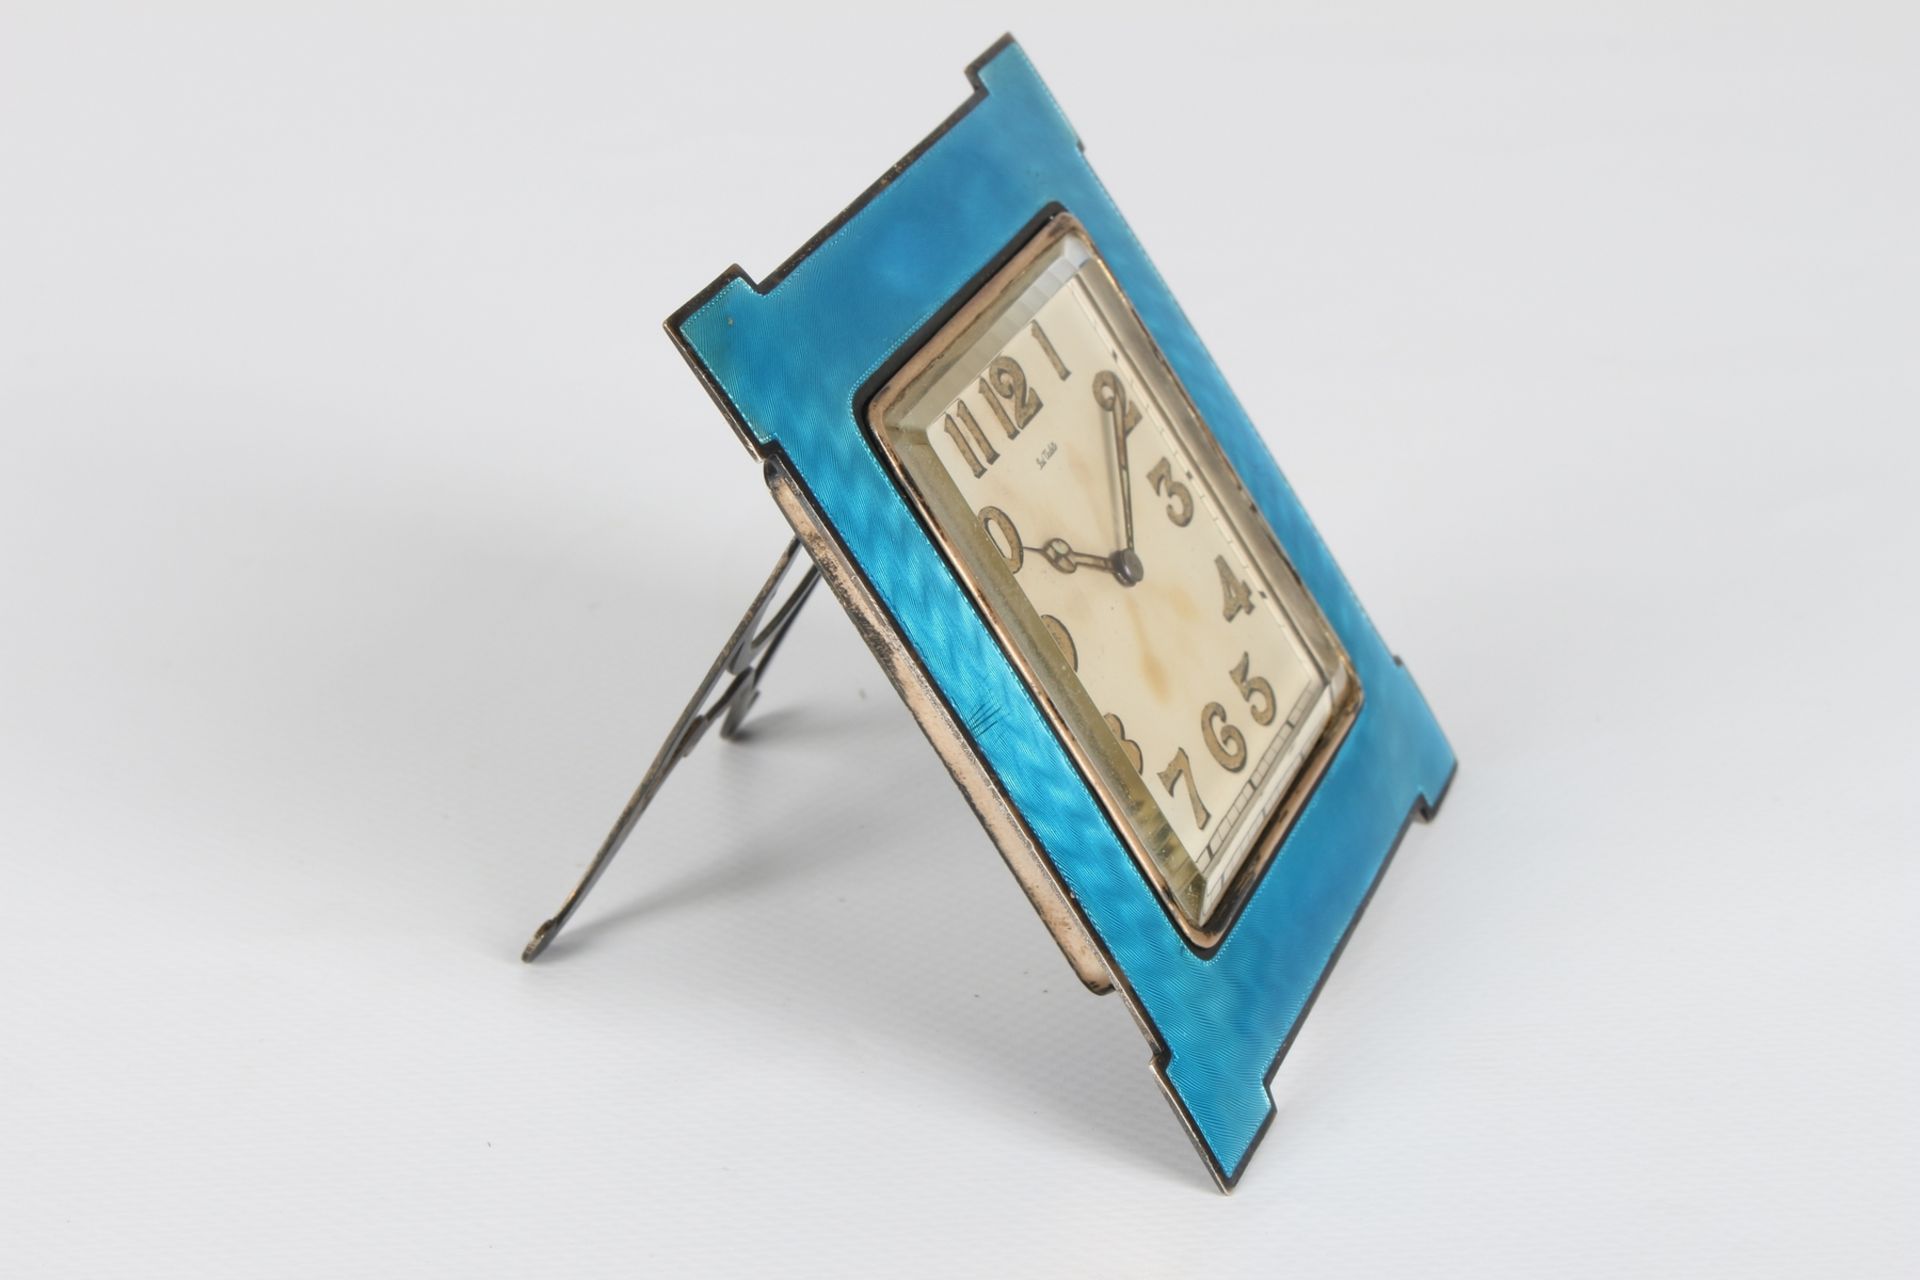 Paul Vallette Silber Reiseuhr, sterling silver travel clock, - Image 3 of 7